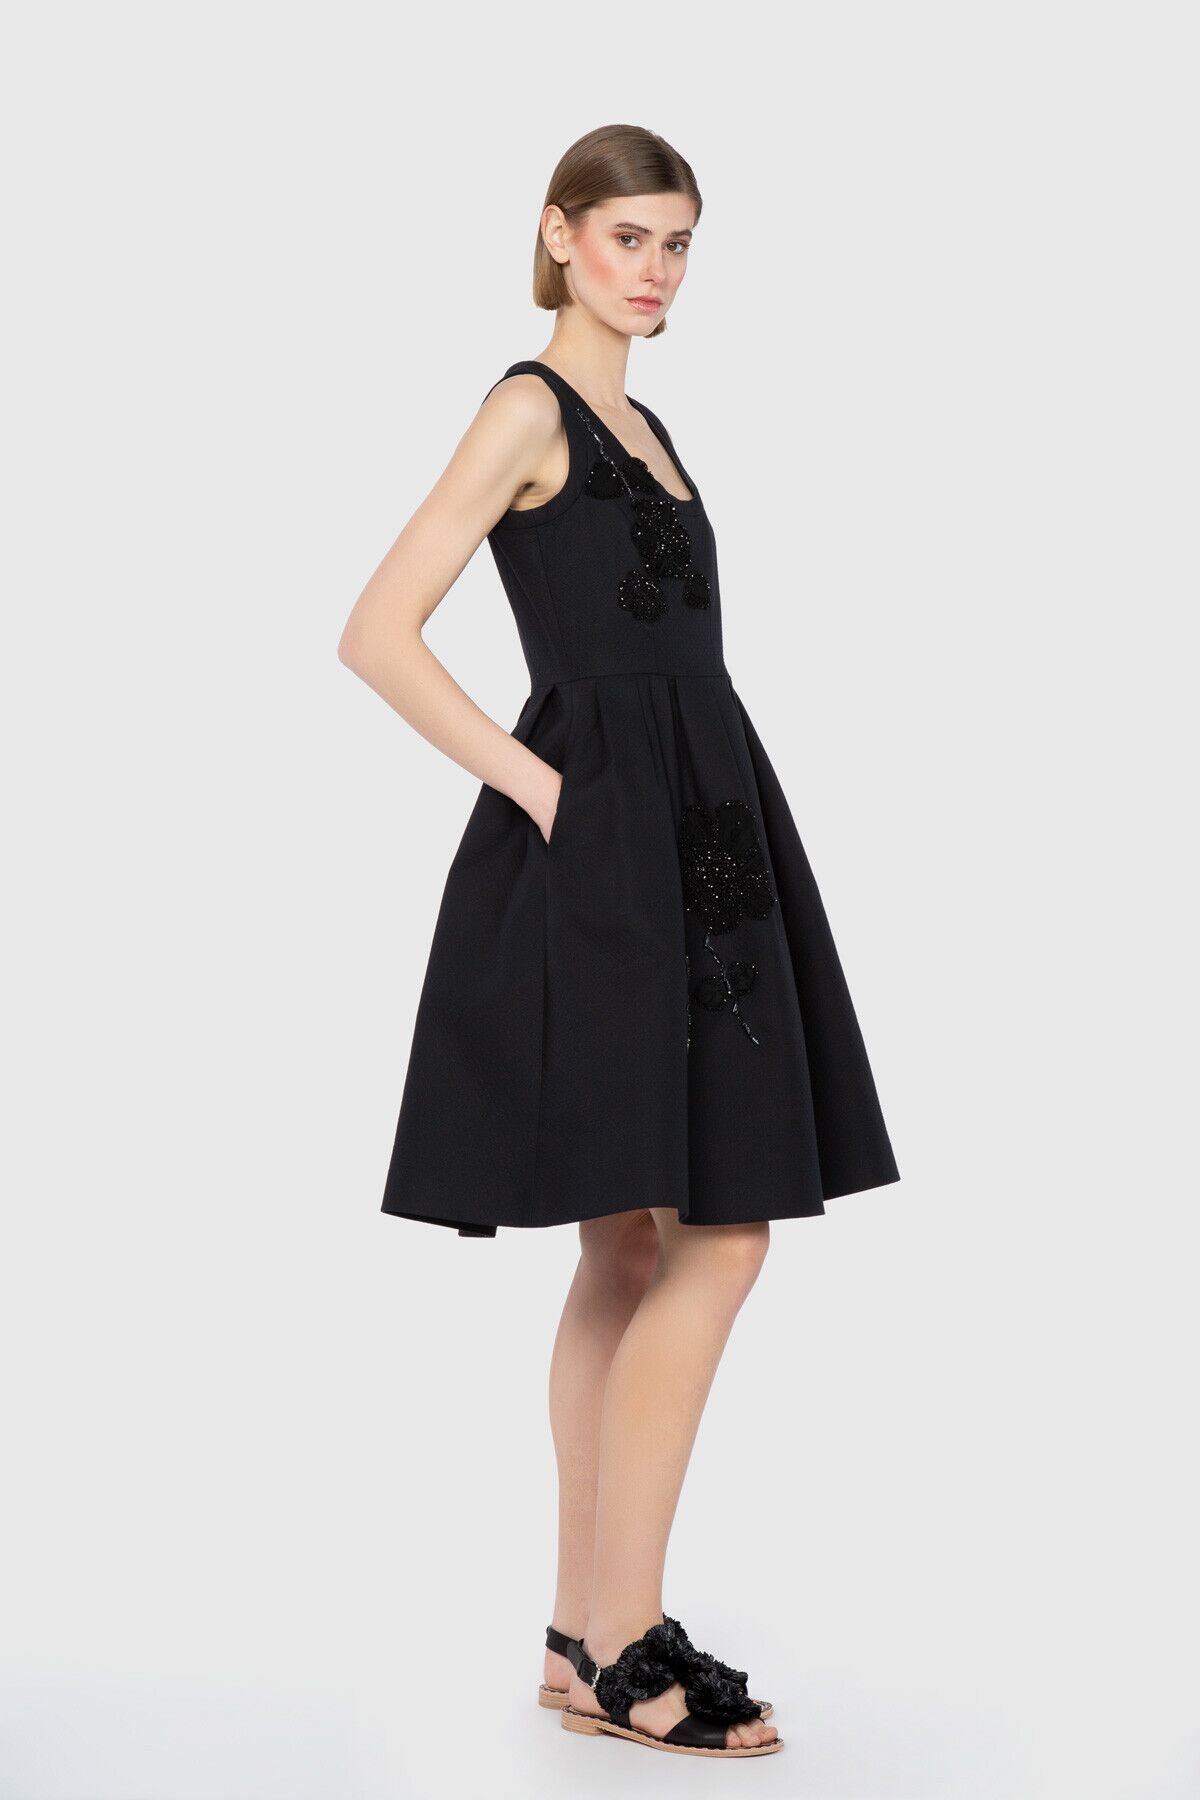 Dice Kayek U Yaka İşleme Detaylı Kolsuz Siyah Tasarım Elbise